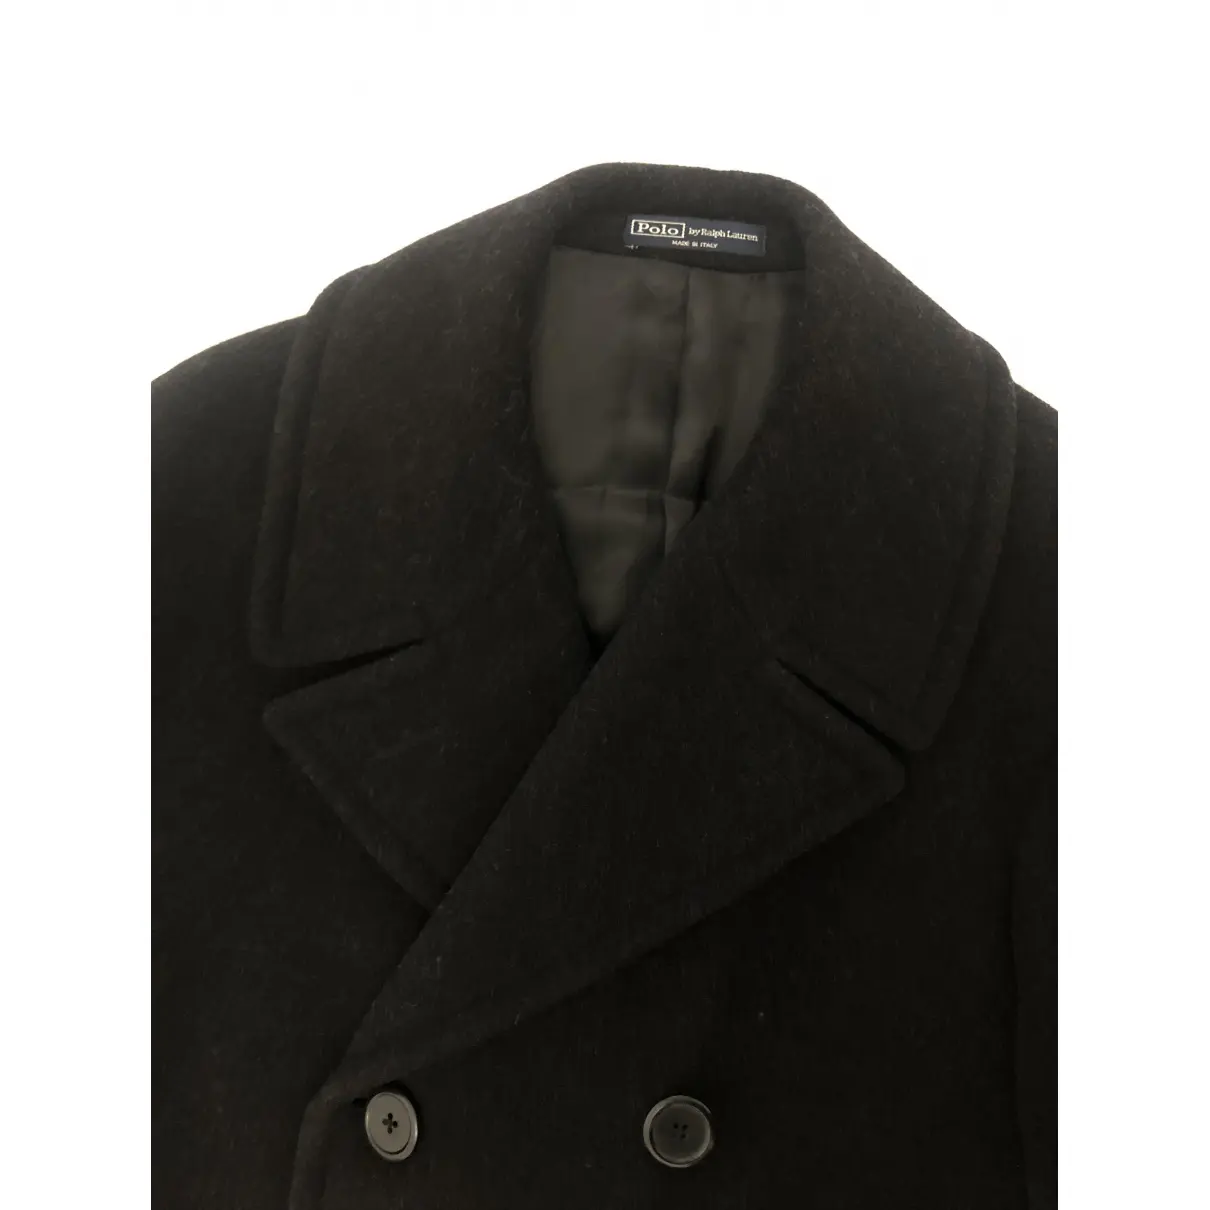 Wool coat Polo Ralph Lauren